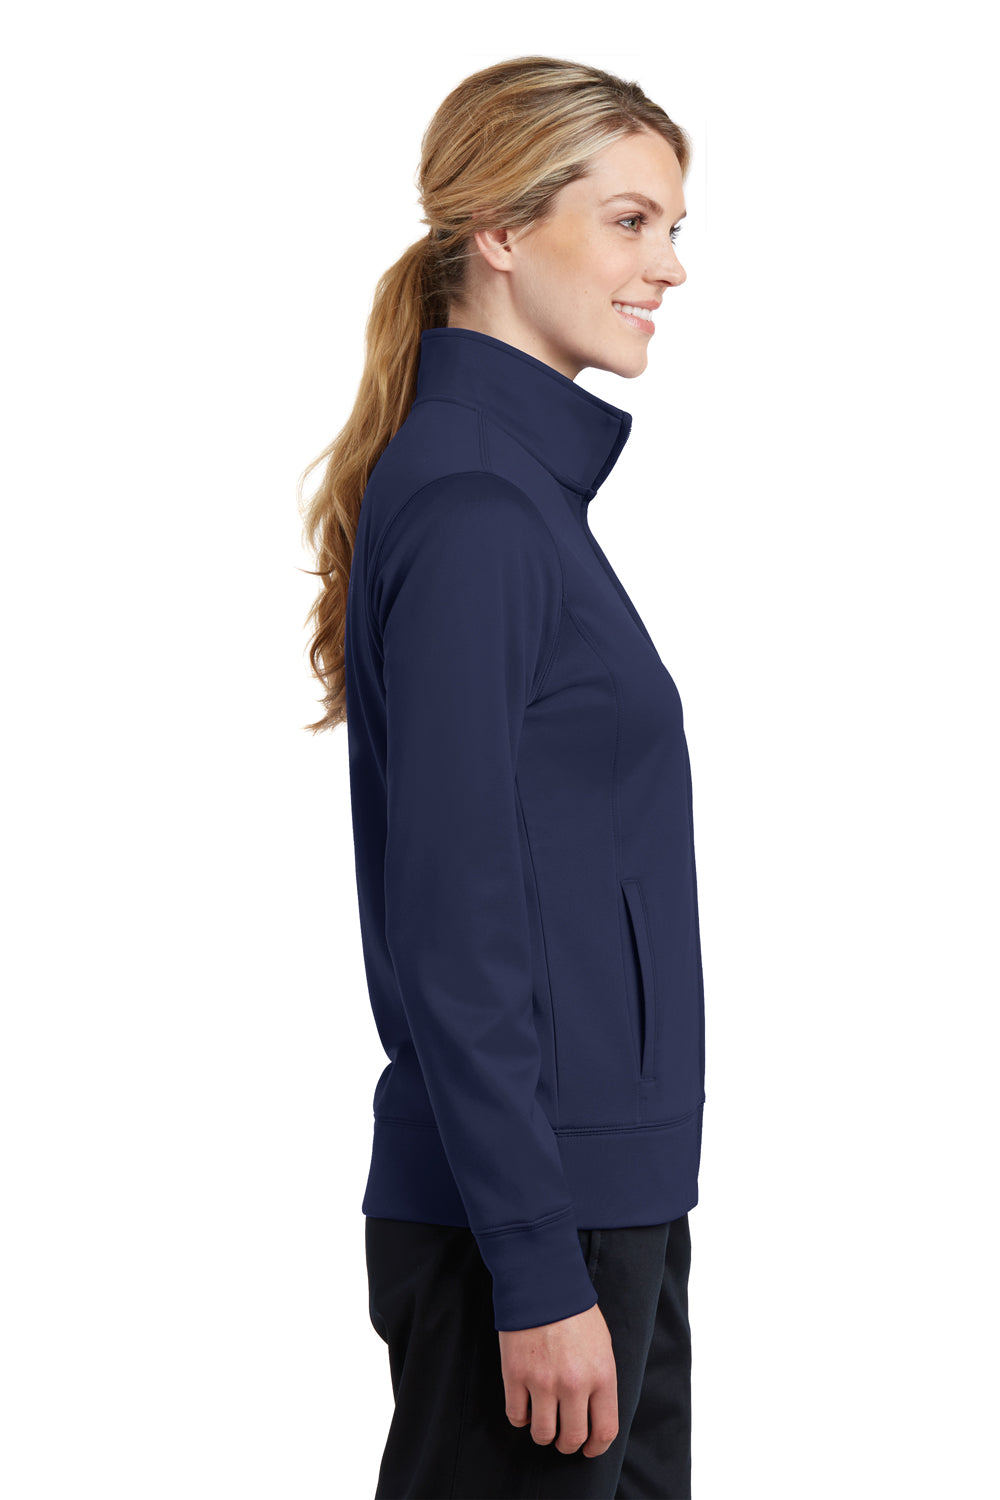 Sport-Tek LST241 Womens Sport-Wick Moisture Wicking Fleece Full Zip Sweatshirt Navy Blue Side